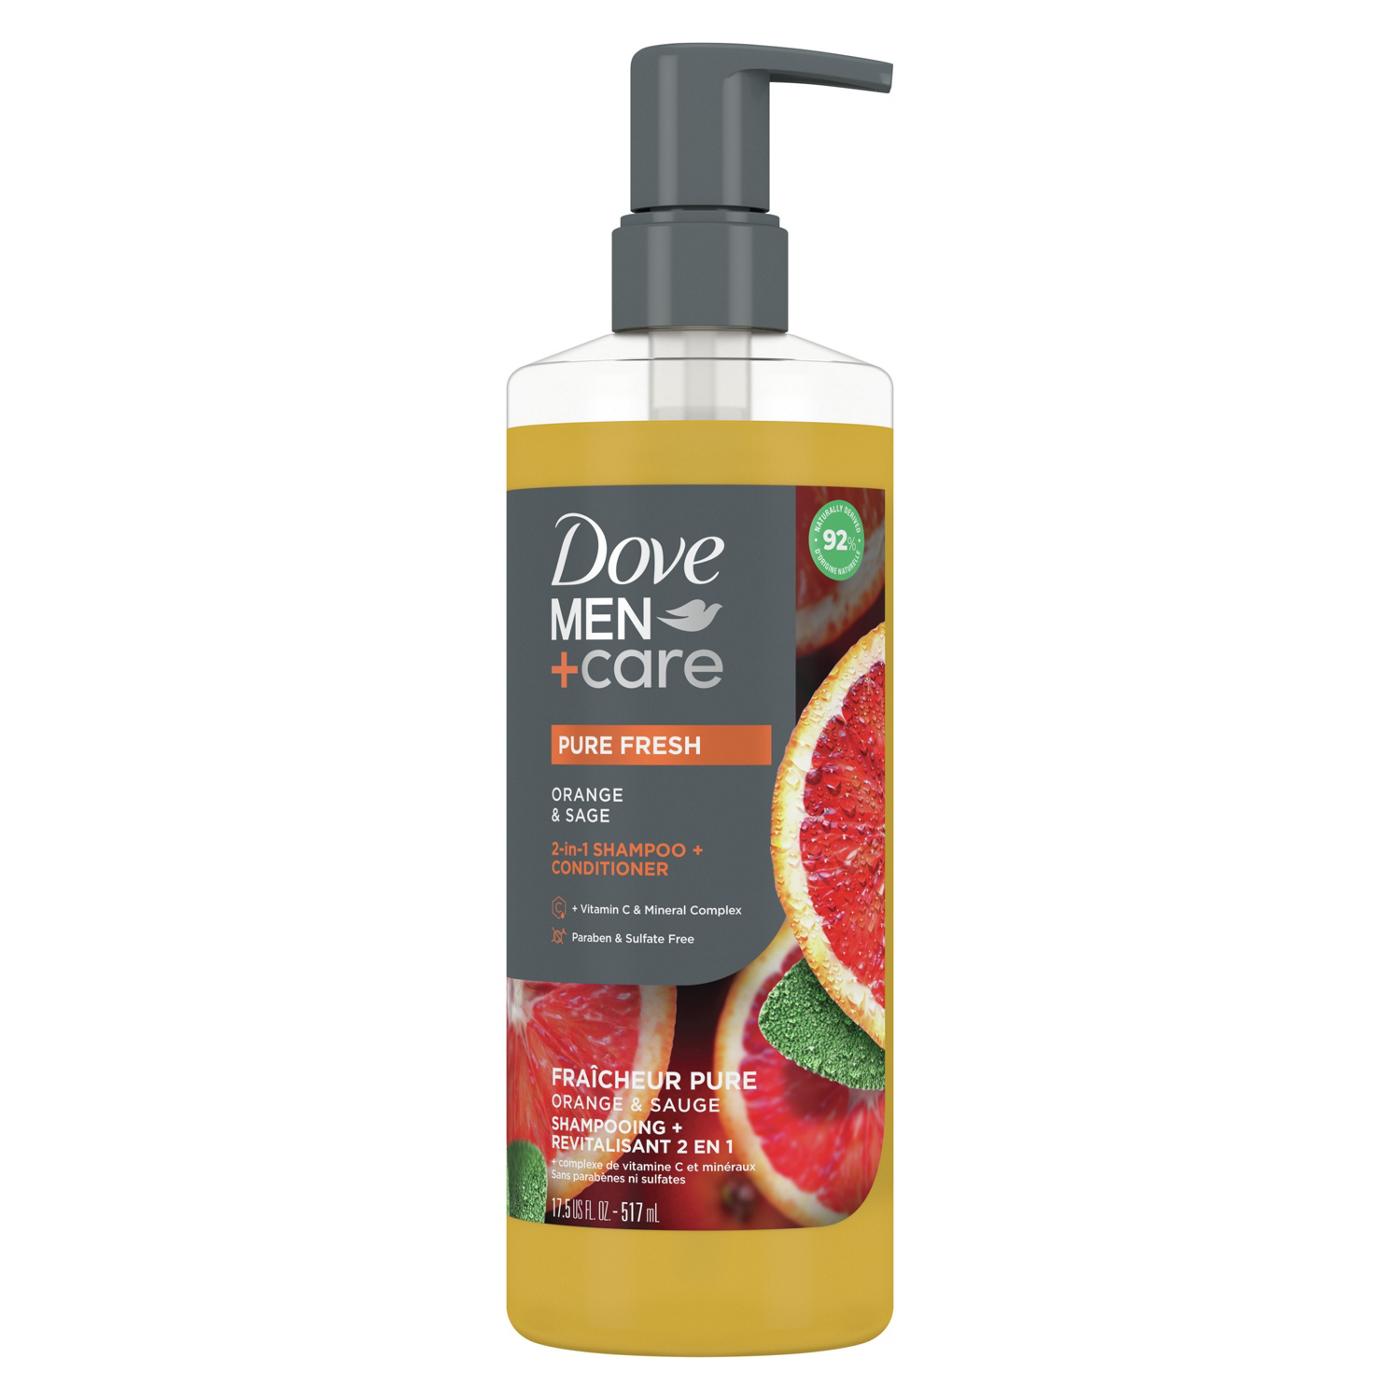 Dove Men+Care Pure Fresh 2 in 1 Shampoo + Conditioner - Orange & Sage; image 1 of 5